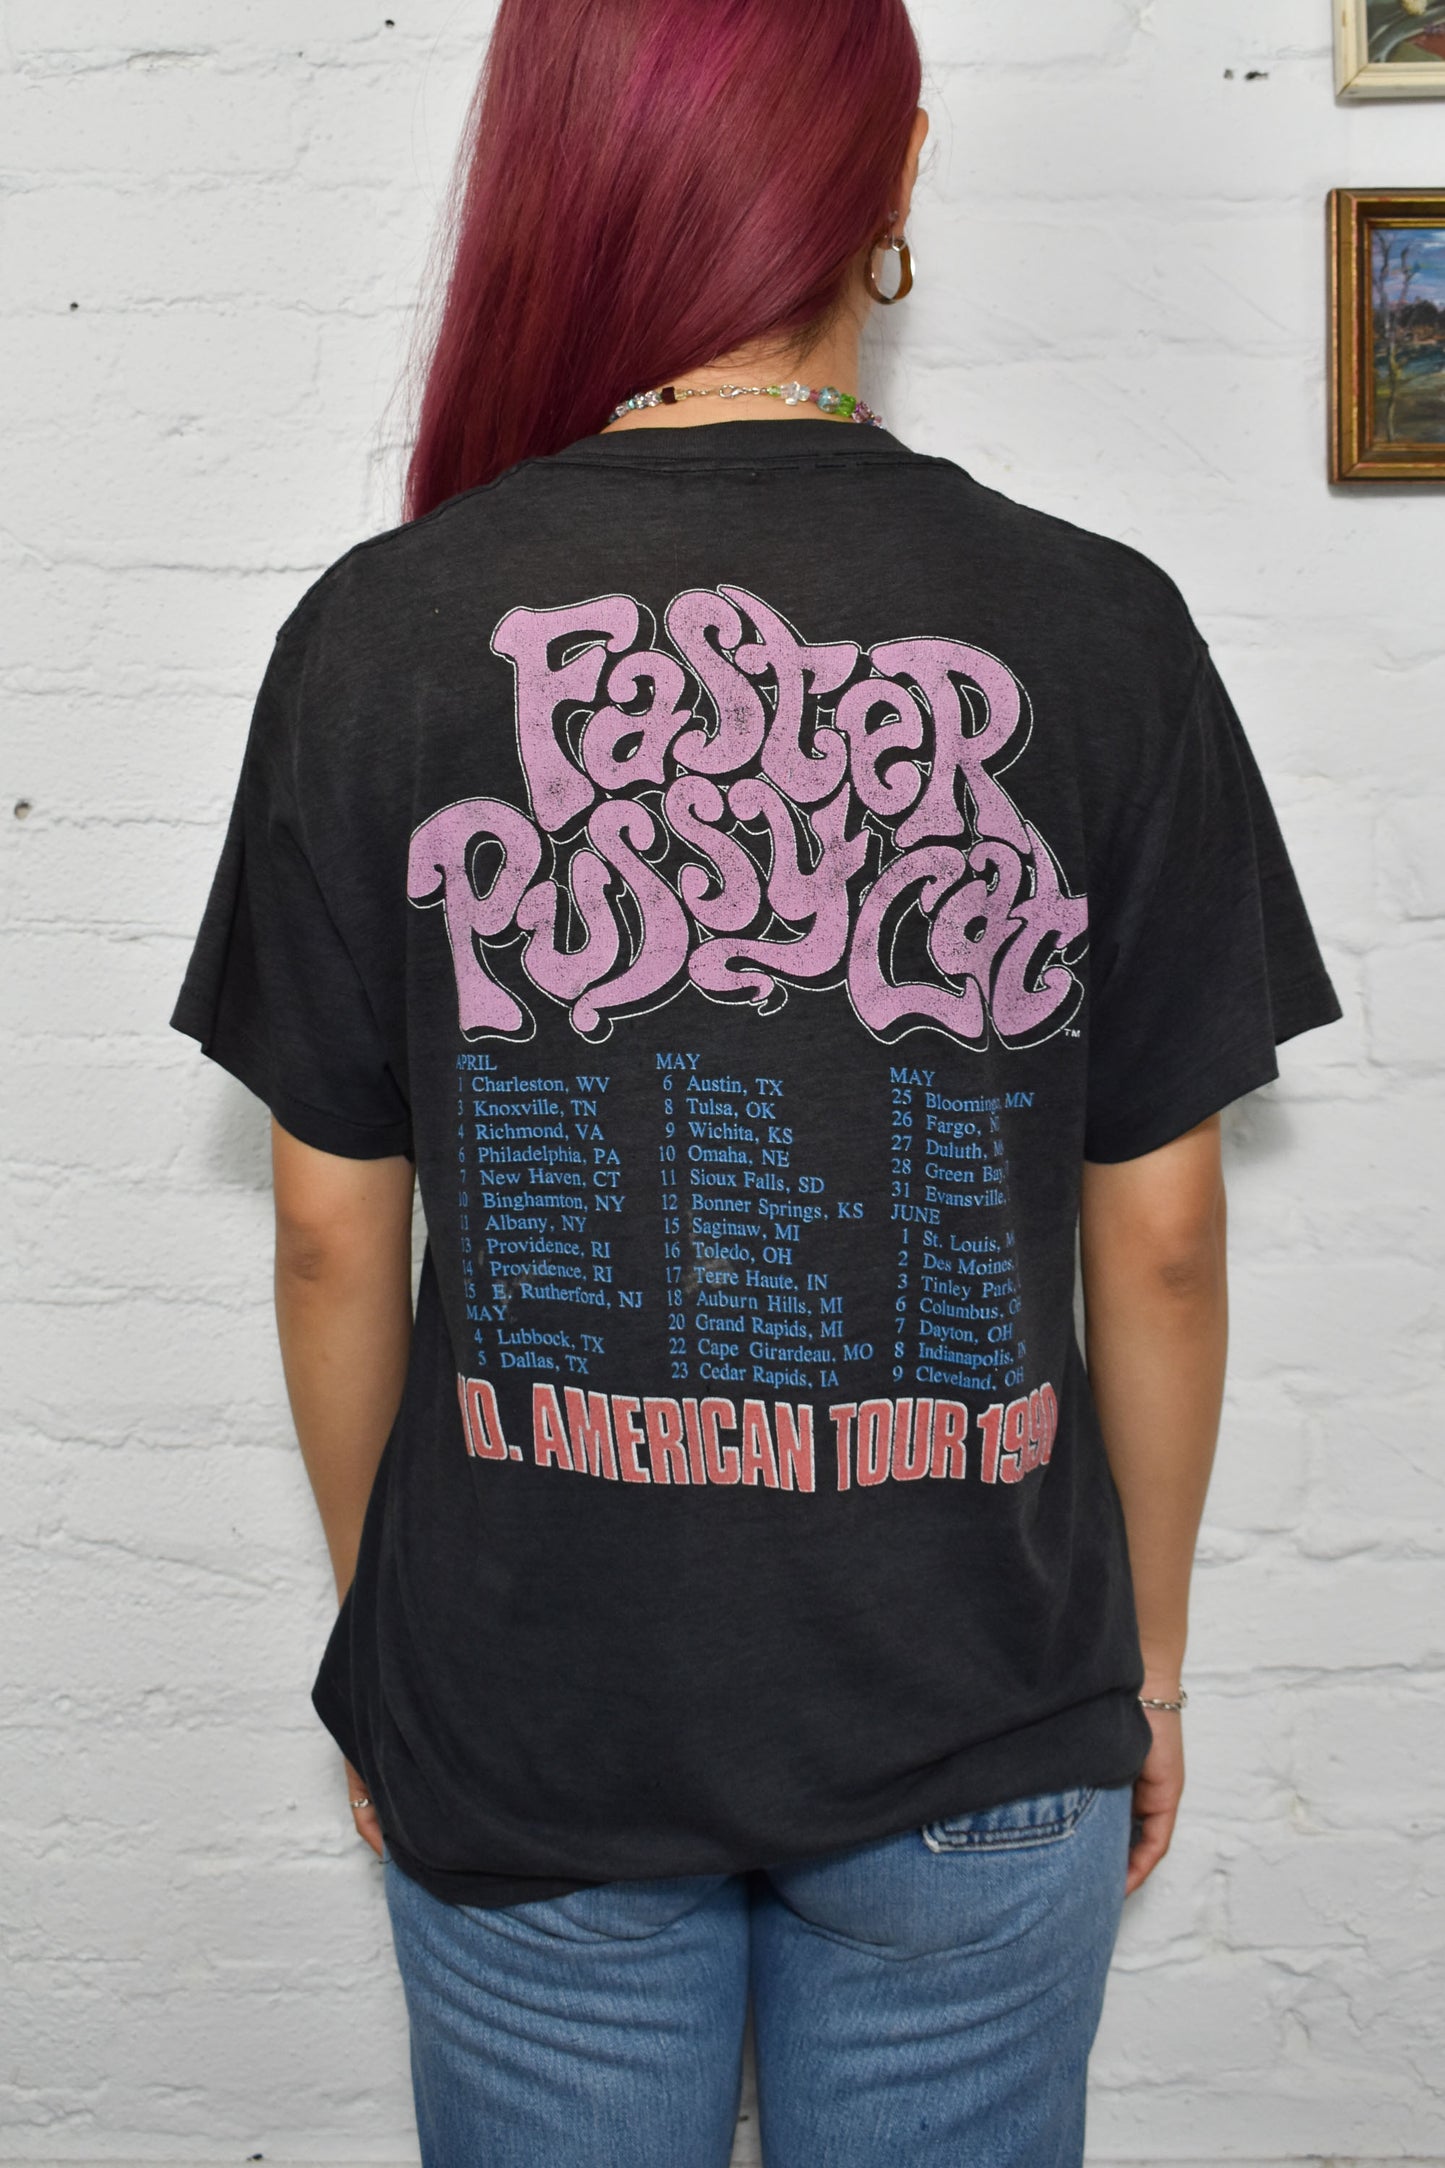 Vintage 1990 "Faster Pussycat" Tour T-Shirt